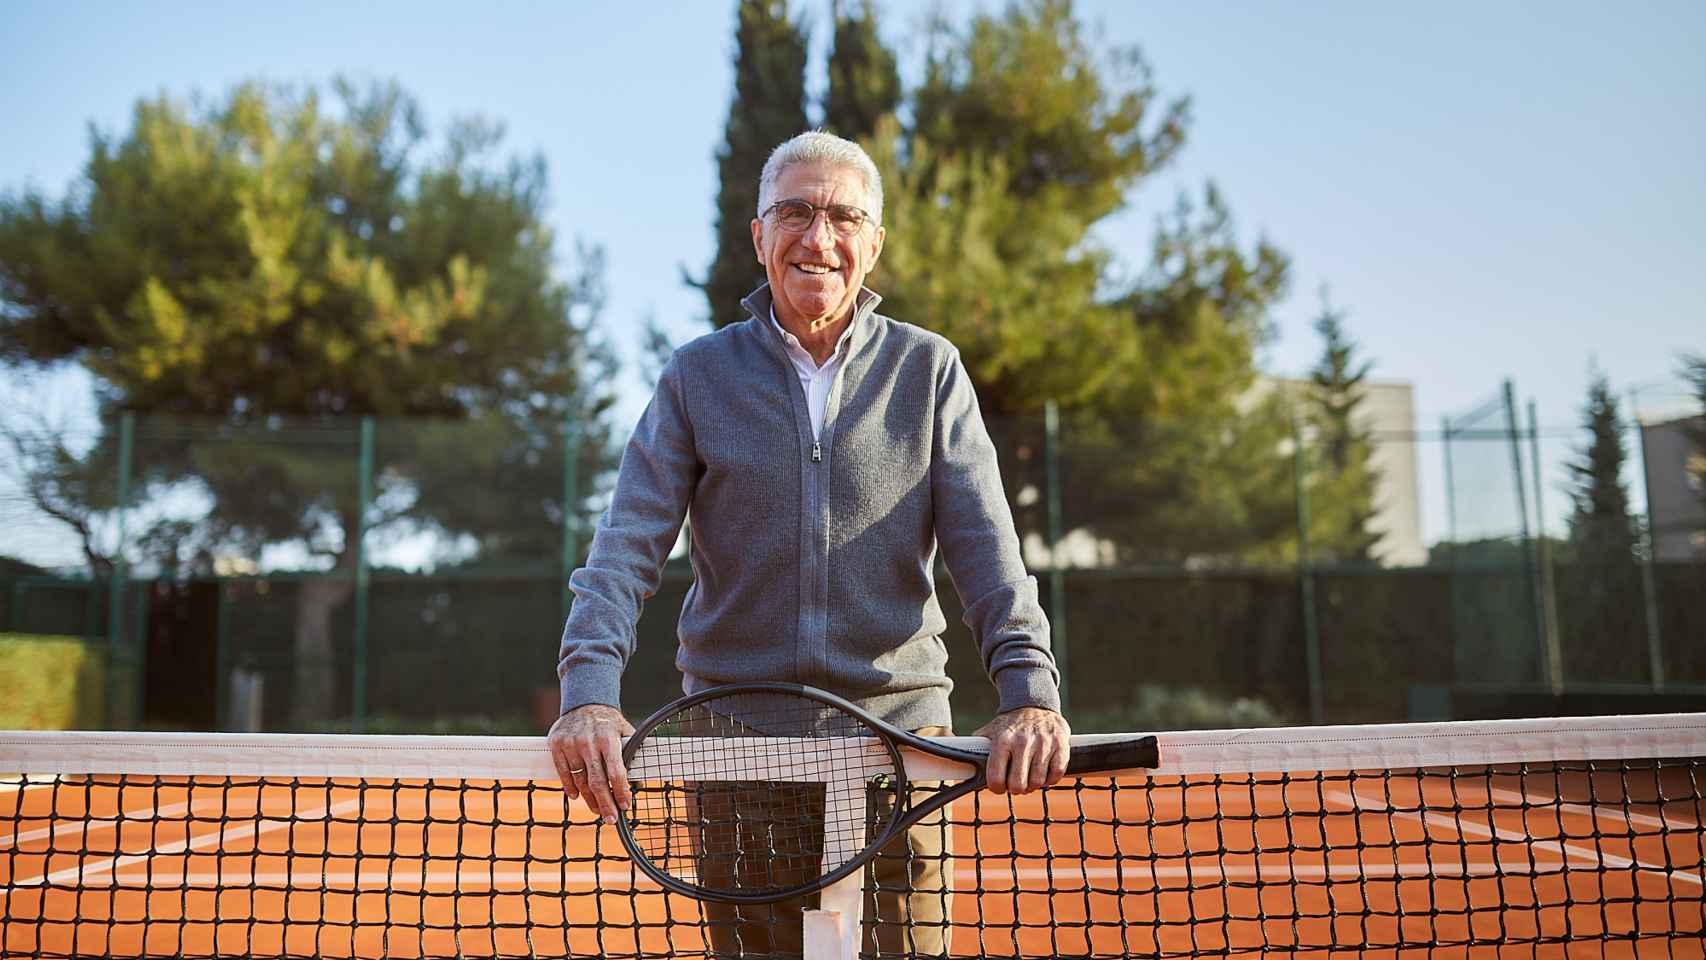 Manuel Orantes estuvo a punto de ganarle a Borg la final de Roland Garros en 1974.